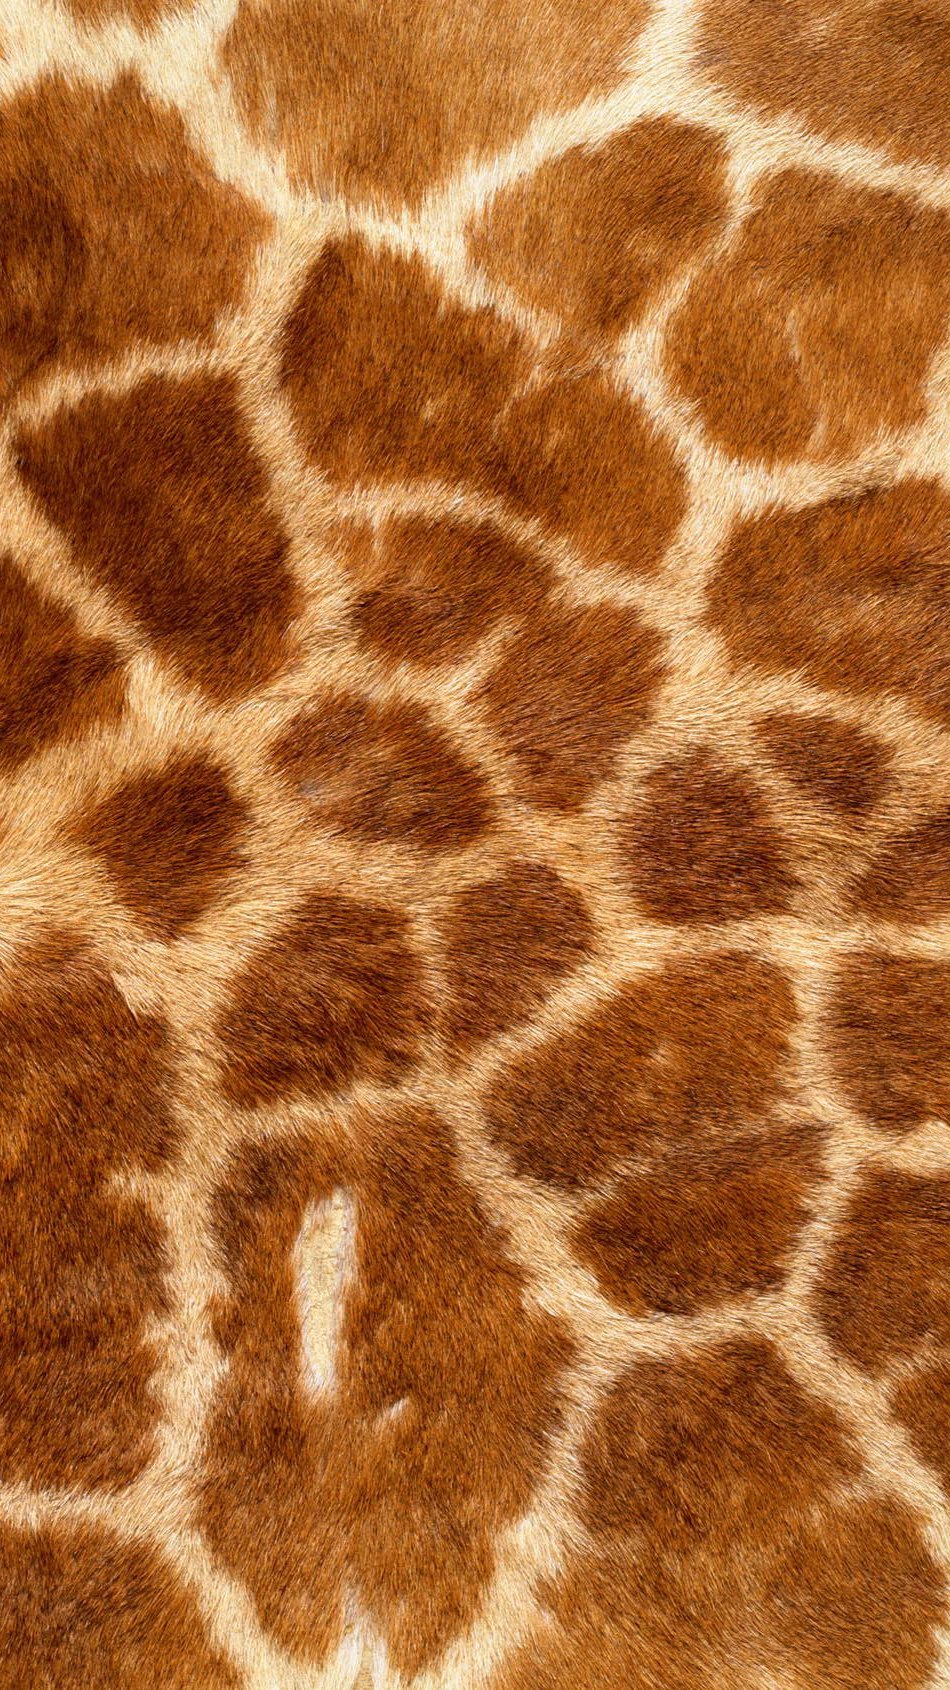 Wallpaper Giraffe texture Vertical